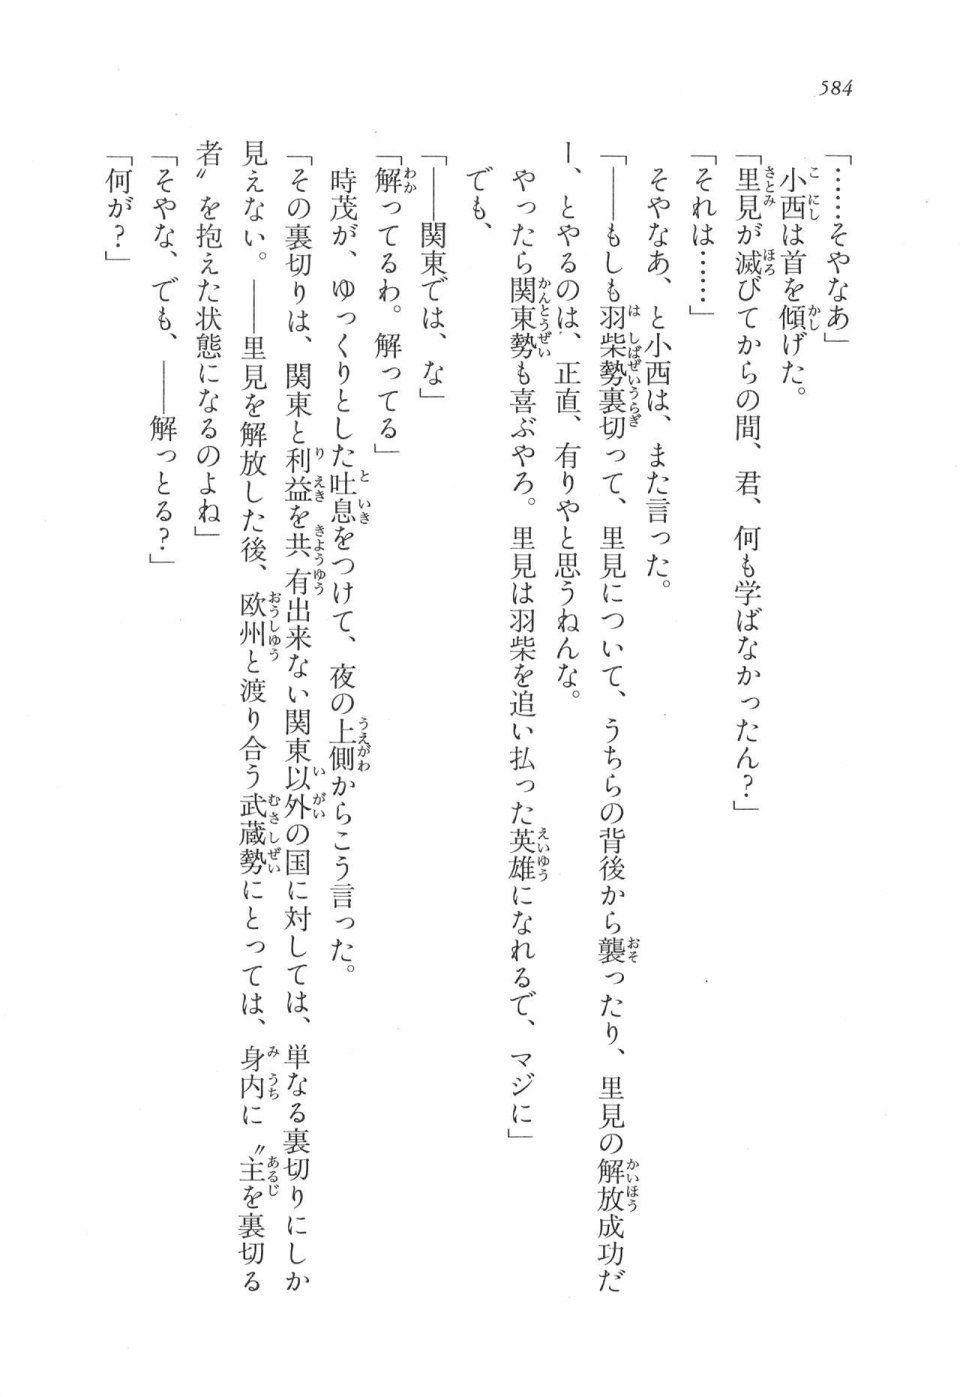 Kyoukai Senjou no Horizon LN Vol 17(7B) - Photo #585